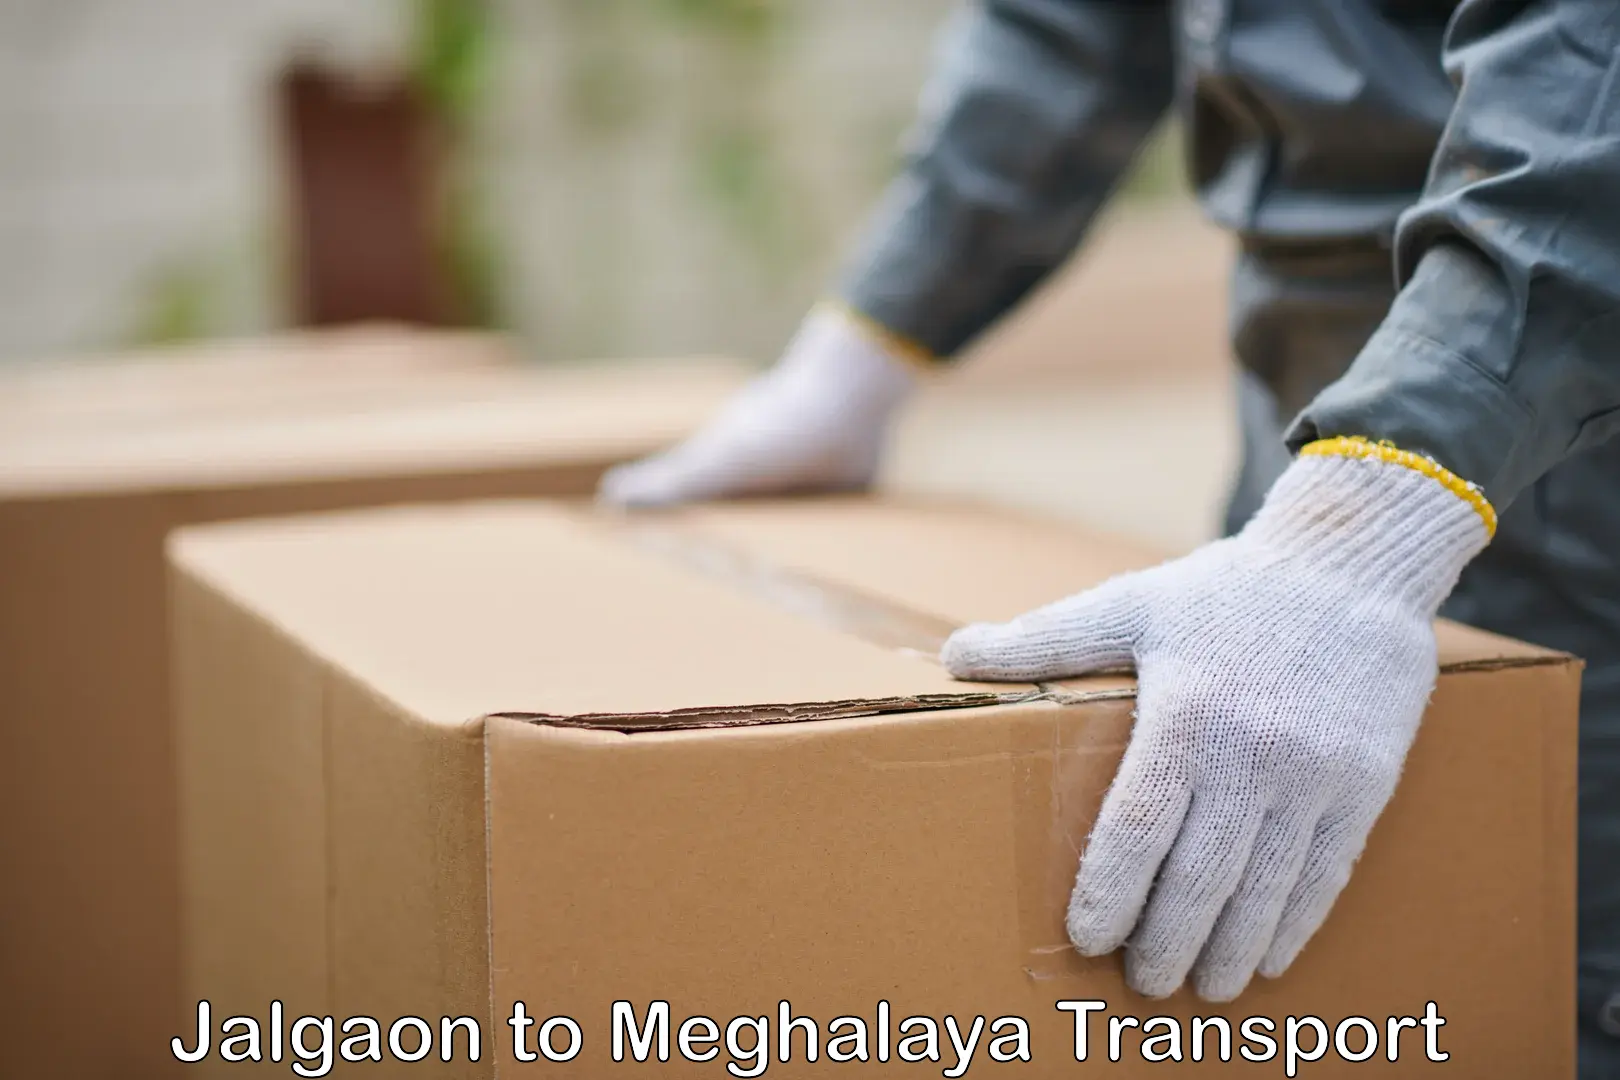 Cargo transport services Jalgaon to Meghalaya